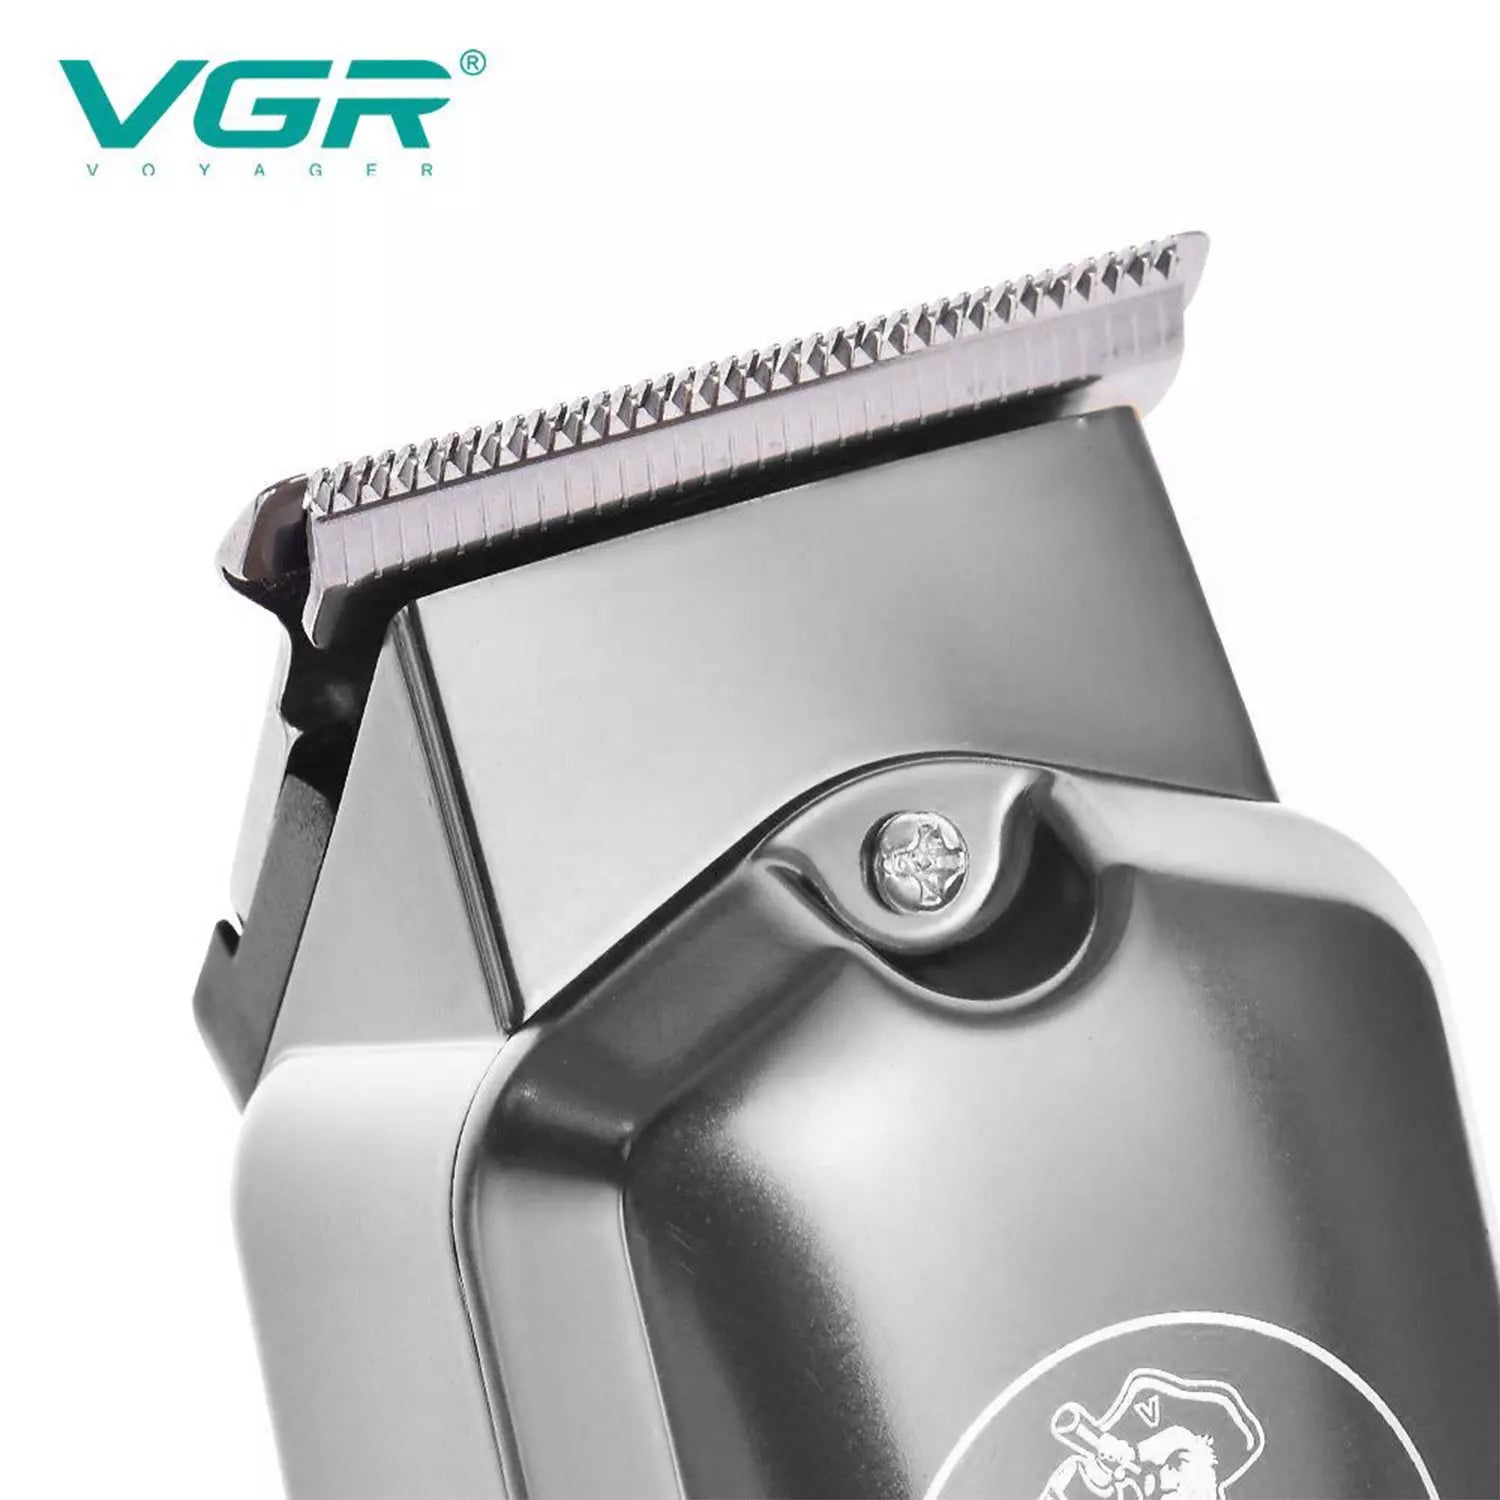 VGR, VGRindia, VGRofficial, VGR V-927